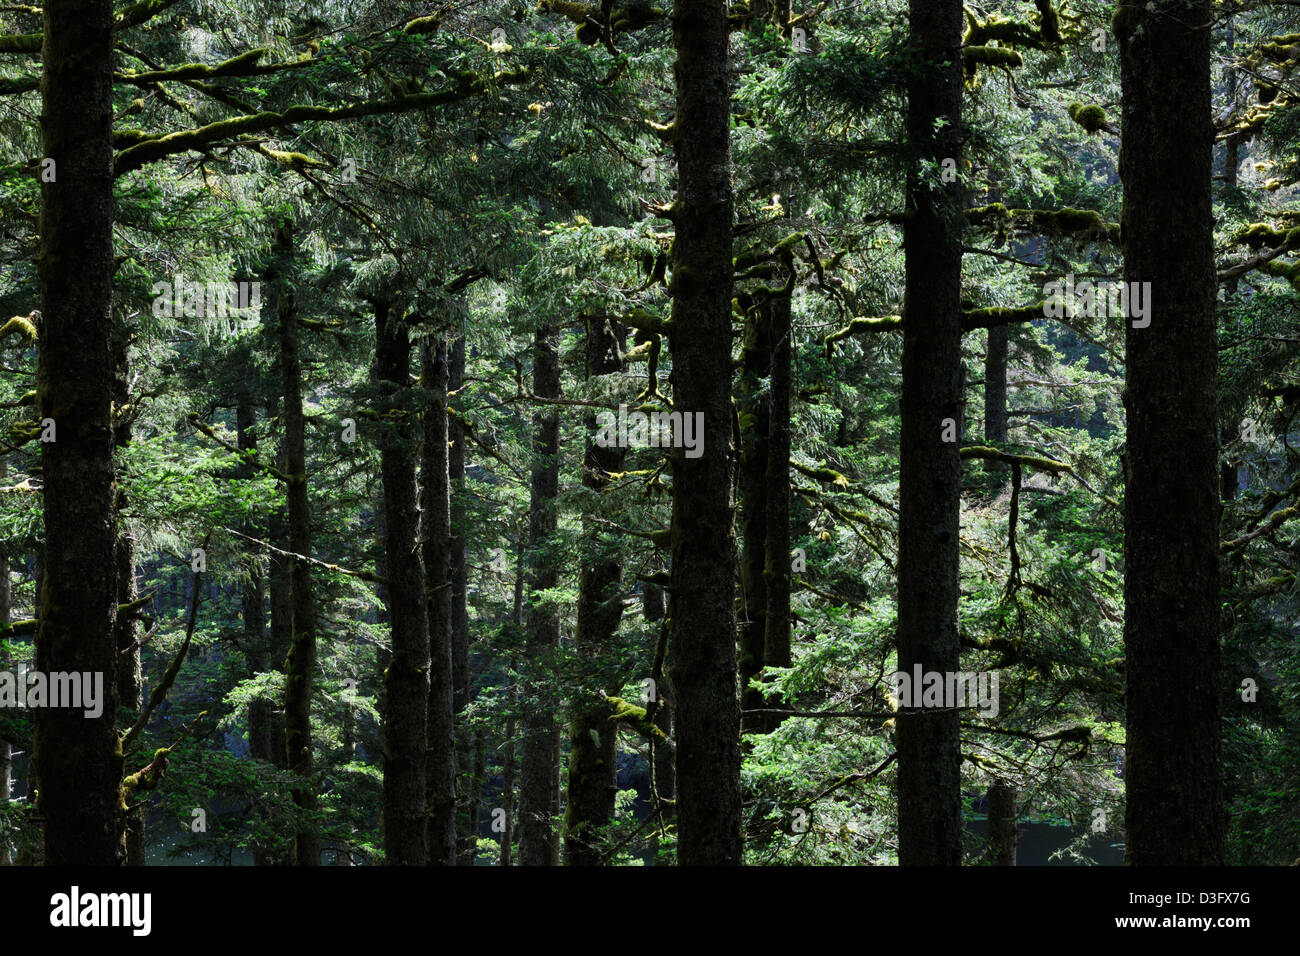 Des arbres dans une forêt tropicale du Pacifique ou du nord, rétroéclairé au Fort Abercombie Parc national sur l'île Kodiak, Alaska, USA. Banque D'Images